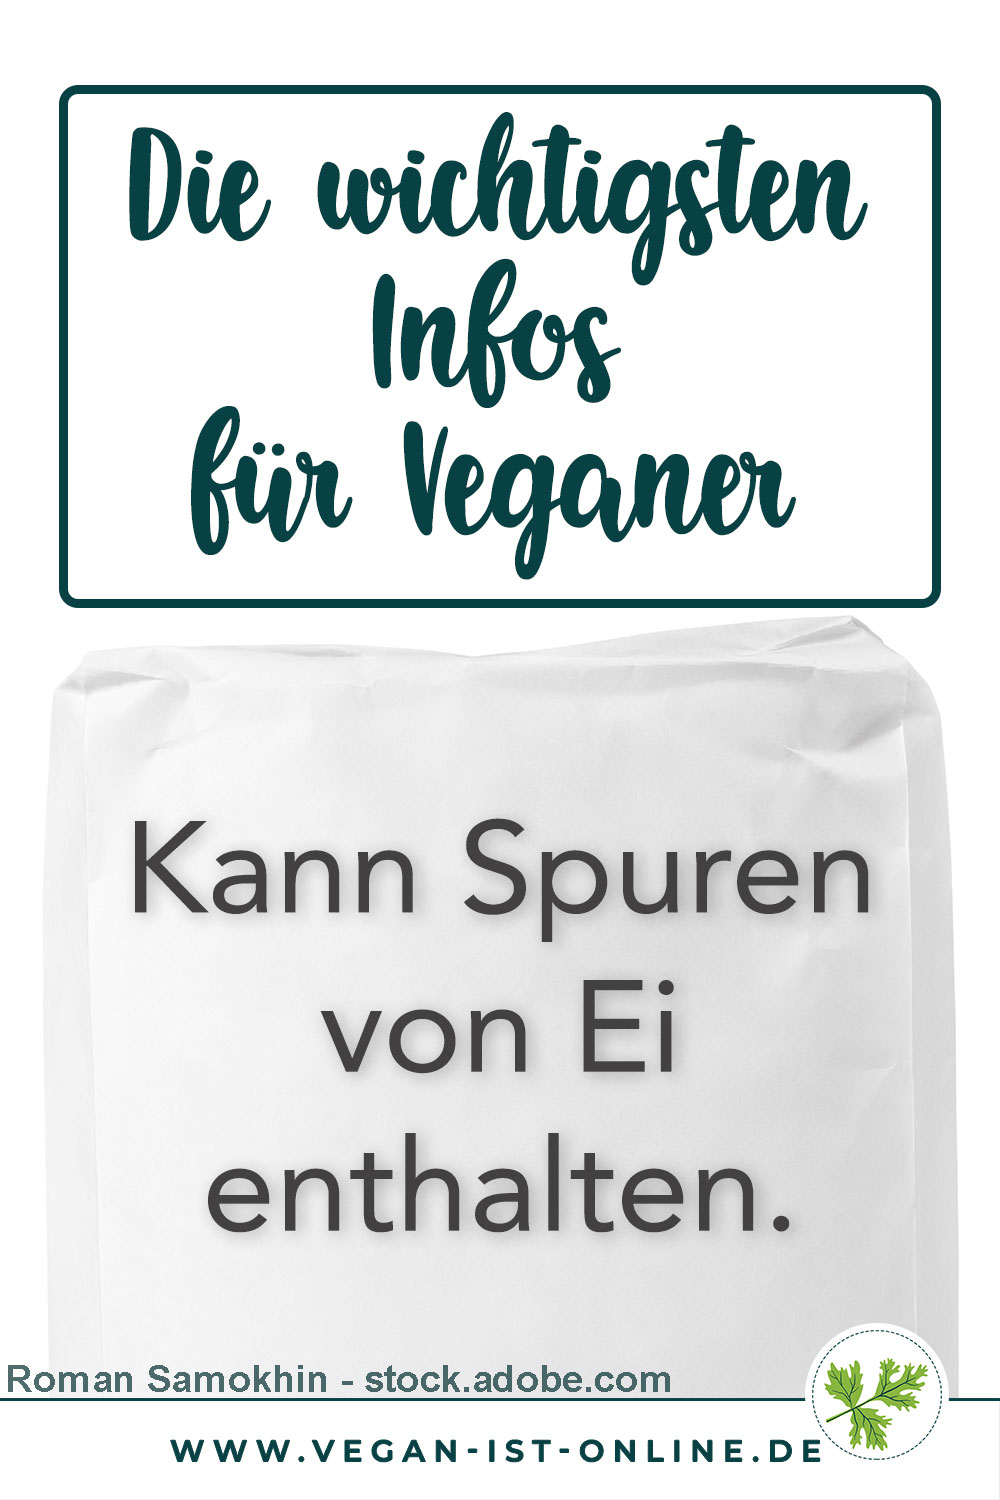 Die wichtigsten Infos für Veganer - Kann Spuren von Ei enthalten | Mehr Infos auf www.vegan-ist-online.de